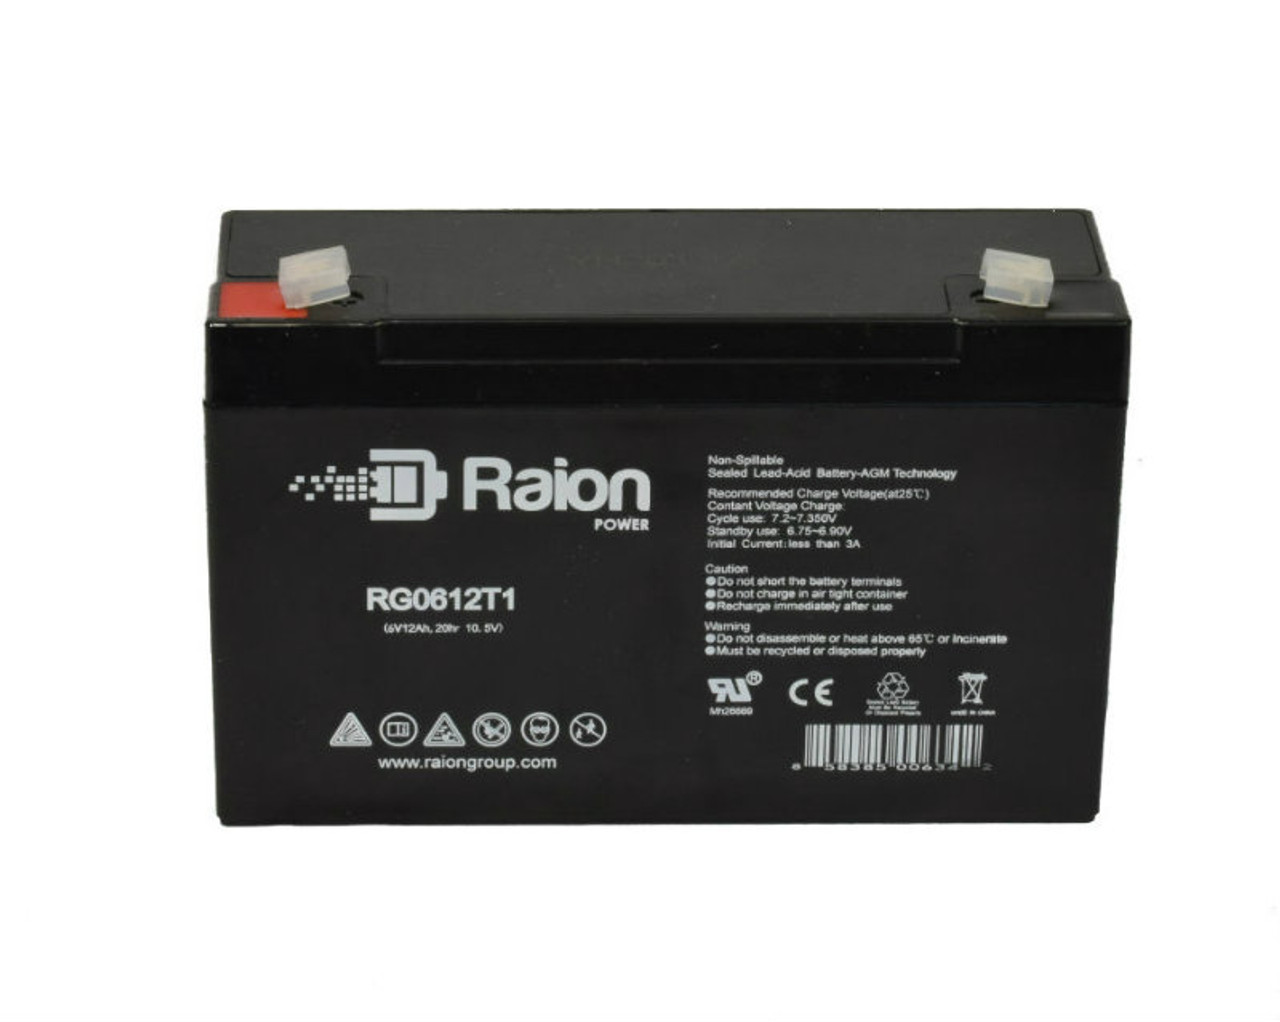 Raion Power RG06120T1 SLA Battery for Light Alarms 6RPG3